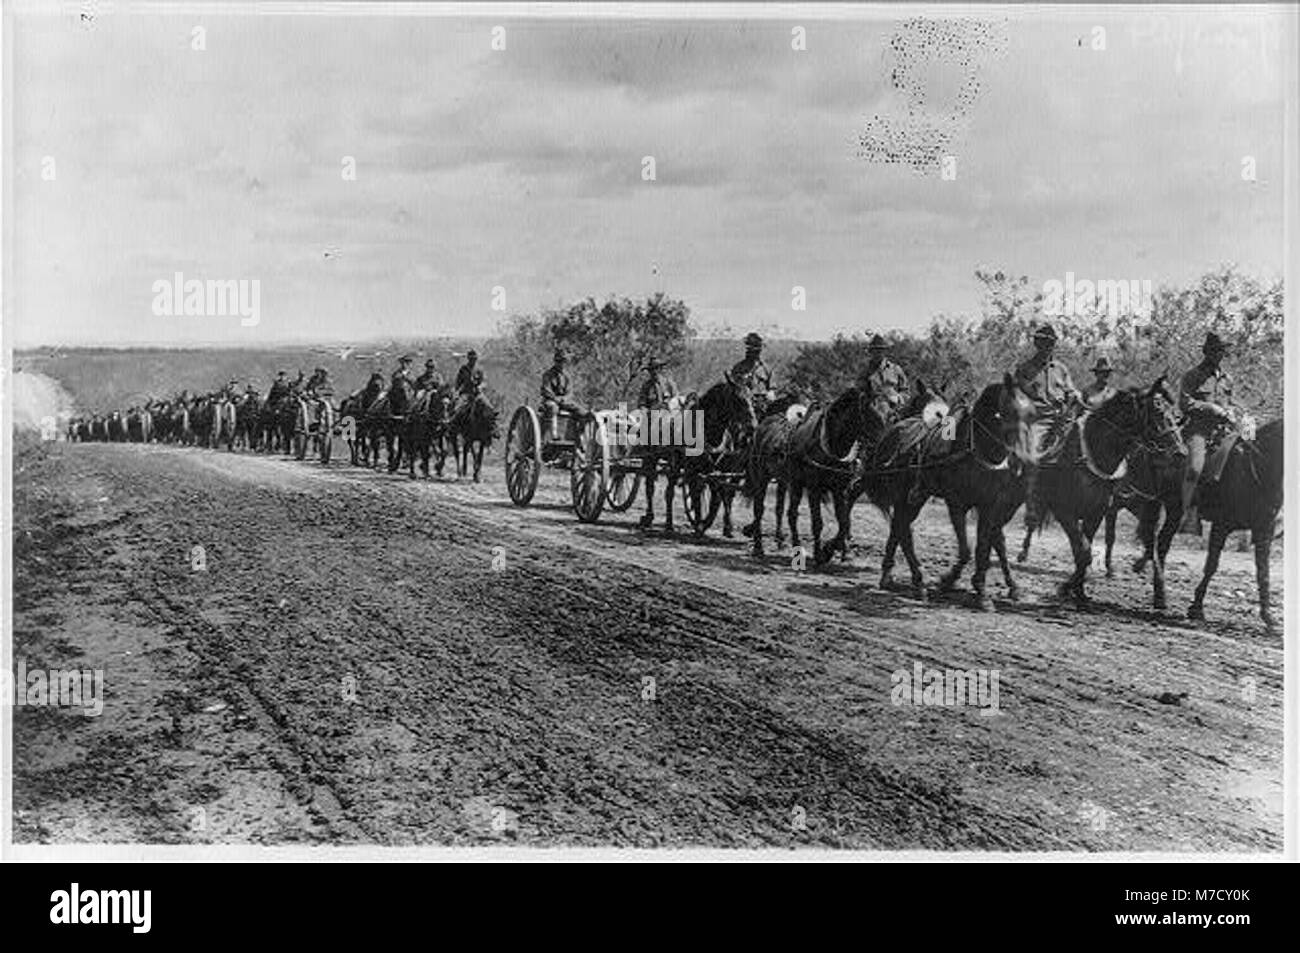 Fort Sam Houston, Texas, 1911-1912- Artillerie sur randonnée pédestre RCAC2006677819 Banque D'Images